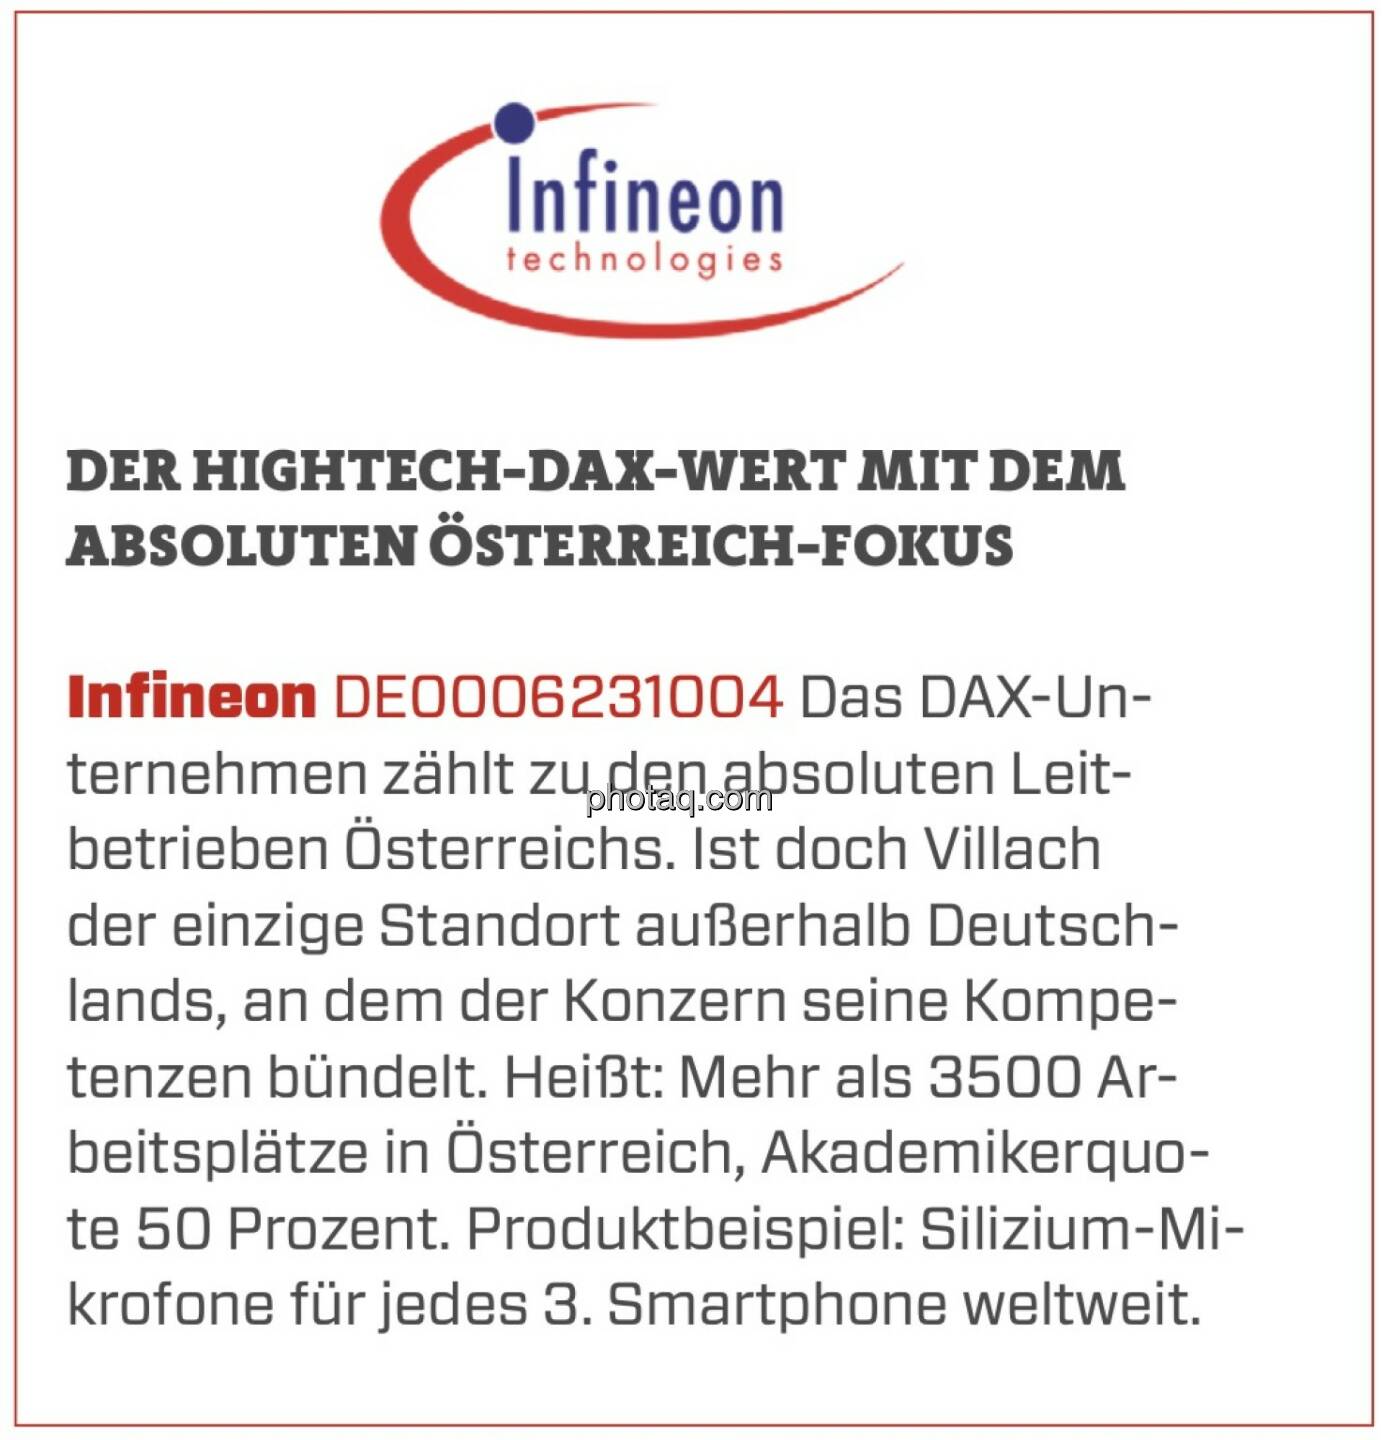 Infineon - Der Hightech-DAX-Wert mit dem absoluten Österreich-Fokus: Das DAX-Unternehmen zählt zu den absoluten Leitbetrieben Österreichs. Ist doch Villach der einzige Standort außerhalb Deutschlands, an dem der Konzern seine Kompetenzen bündelt. Heißt: Mehr als 3500 Arbeitsplätze in Österreich, Akademikerquote 50 Prozent. Produktbeispiel: Silizium-Mikrofone für jedes 3. Smartphone weltweit. 